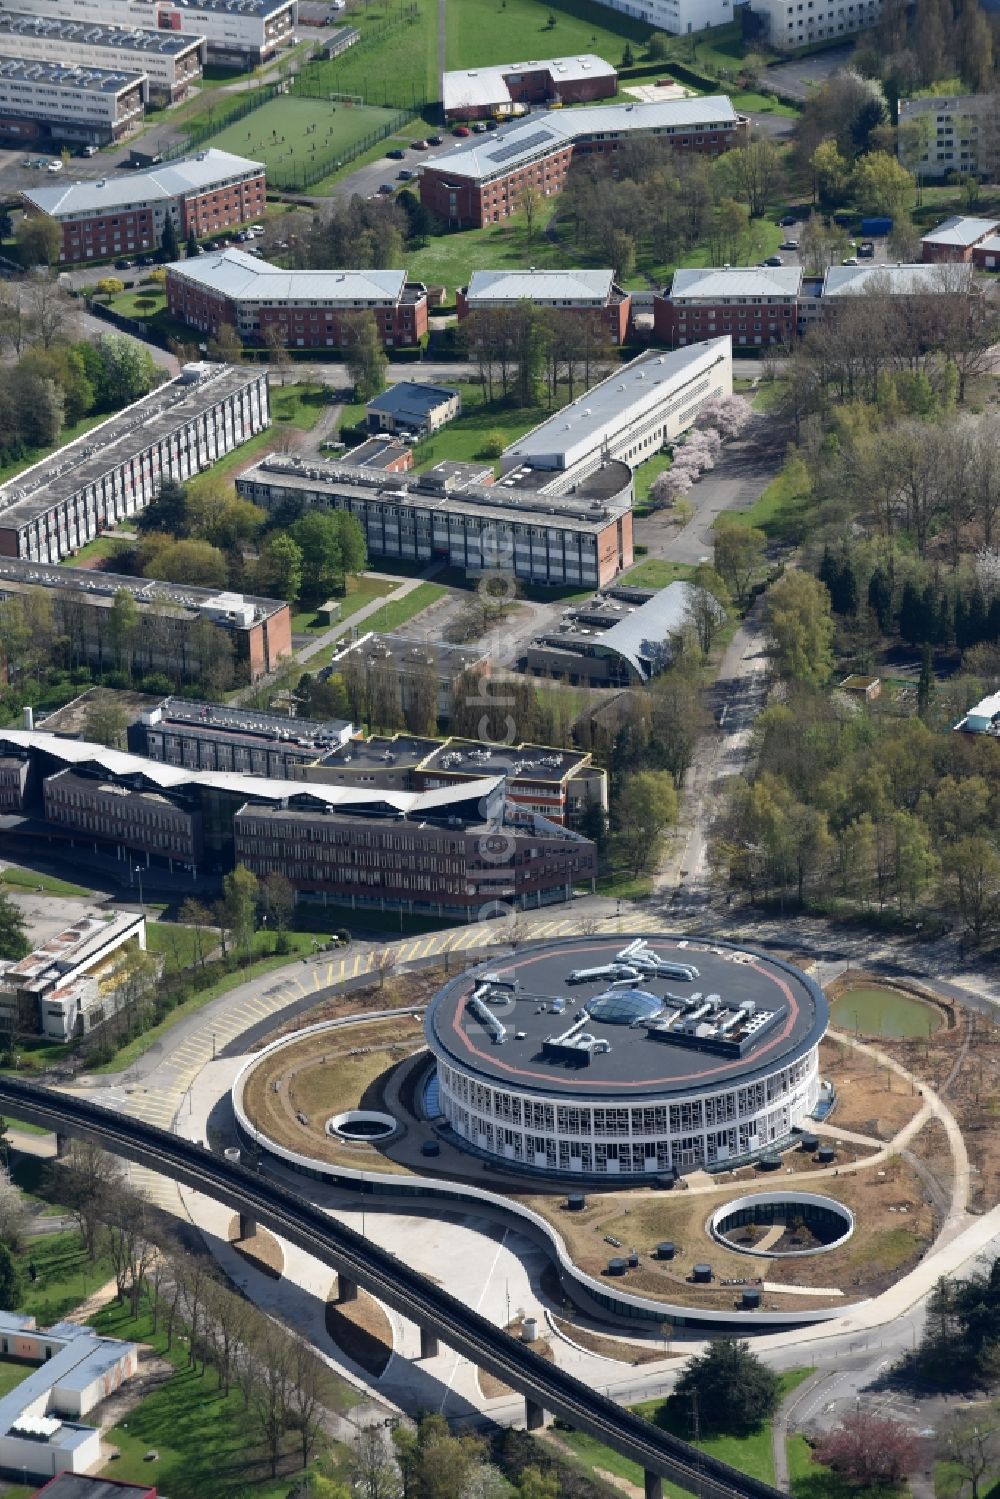 Luftaufnahme Lille - Bibliotheks- Gebäude auf dem Campus der Universitäte Universite de Lille 1 in Lille in Nord-Pas-de-Calais Picardie, Frankreich